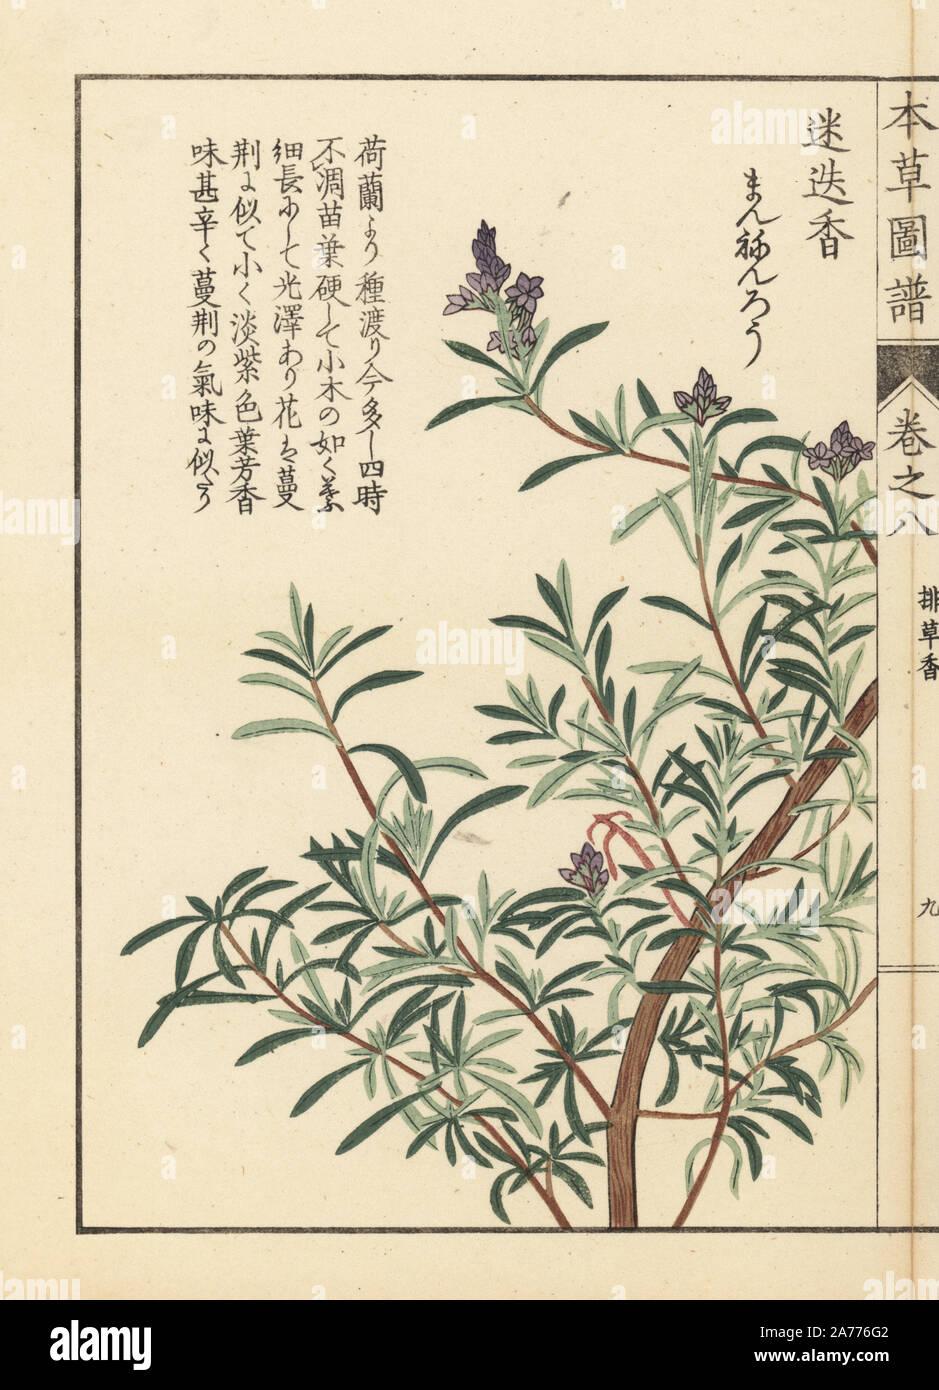 Il rosmarino, Rosmarinus officinalis. Stampato a colori woodblock incisione di Kan'en Iwasaki da 'Honzo Zufu", una guida illustrata per piante medicinali, Giappone, 1884. La Iwasaki (1786-1842) era un giapponese botanico, entomologo e zoologo. Egli è stato uno dei primi botanici giapponesi per incorporare la conoscenza occidentale nei suoi studi. Foto Stock